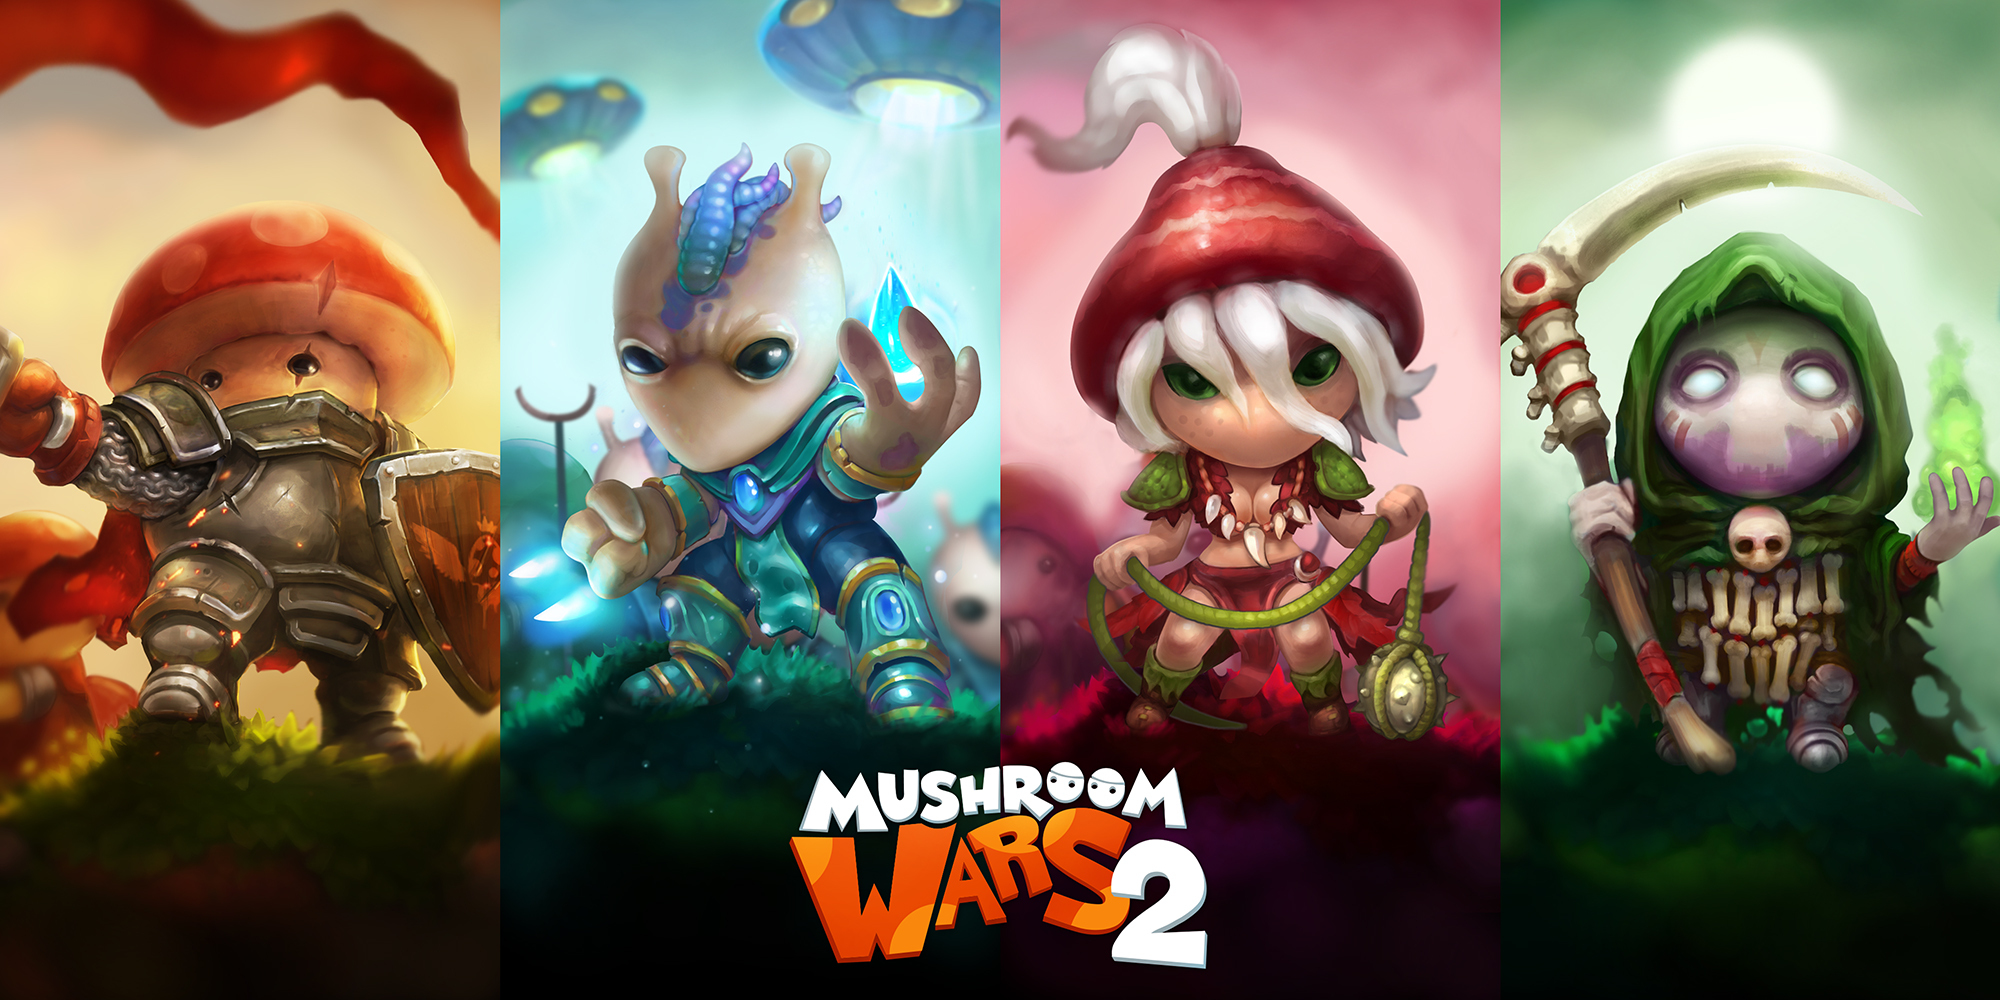 mushroom wars 2 on steam